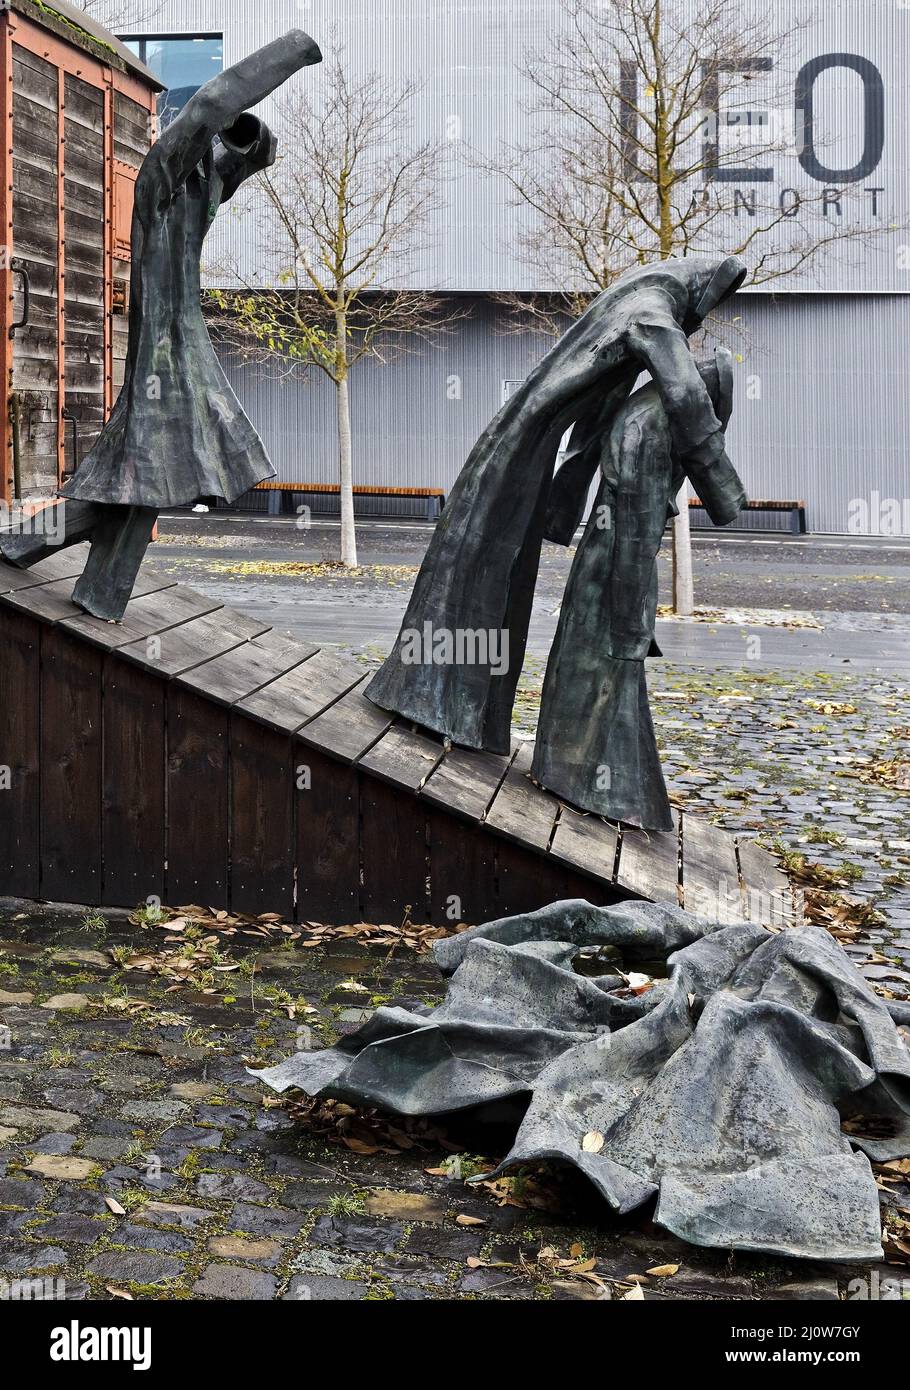 Memorial Die Rampe, artista E.R. Nele, memoria de la deportación y trabajadores forzados, Kassel, Alemania Foto de stock